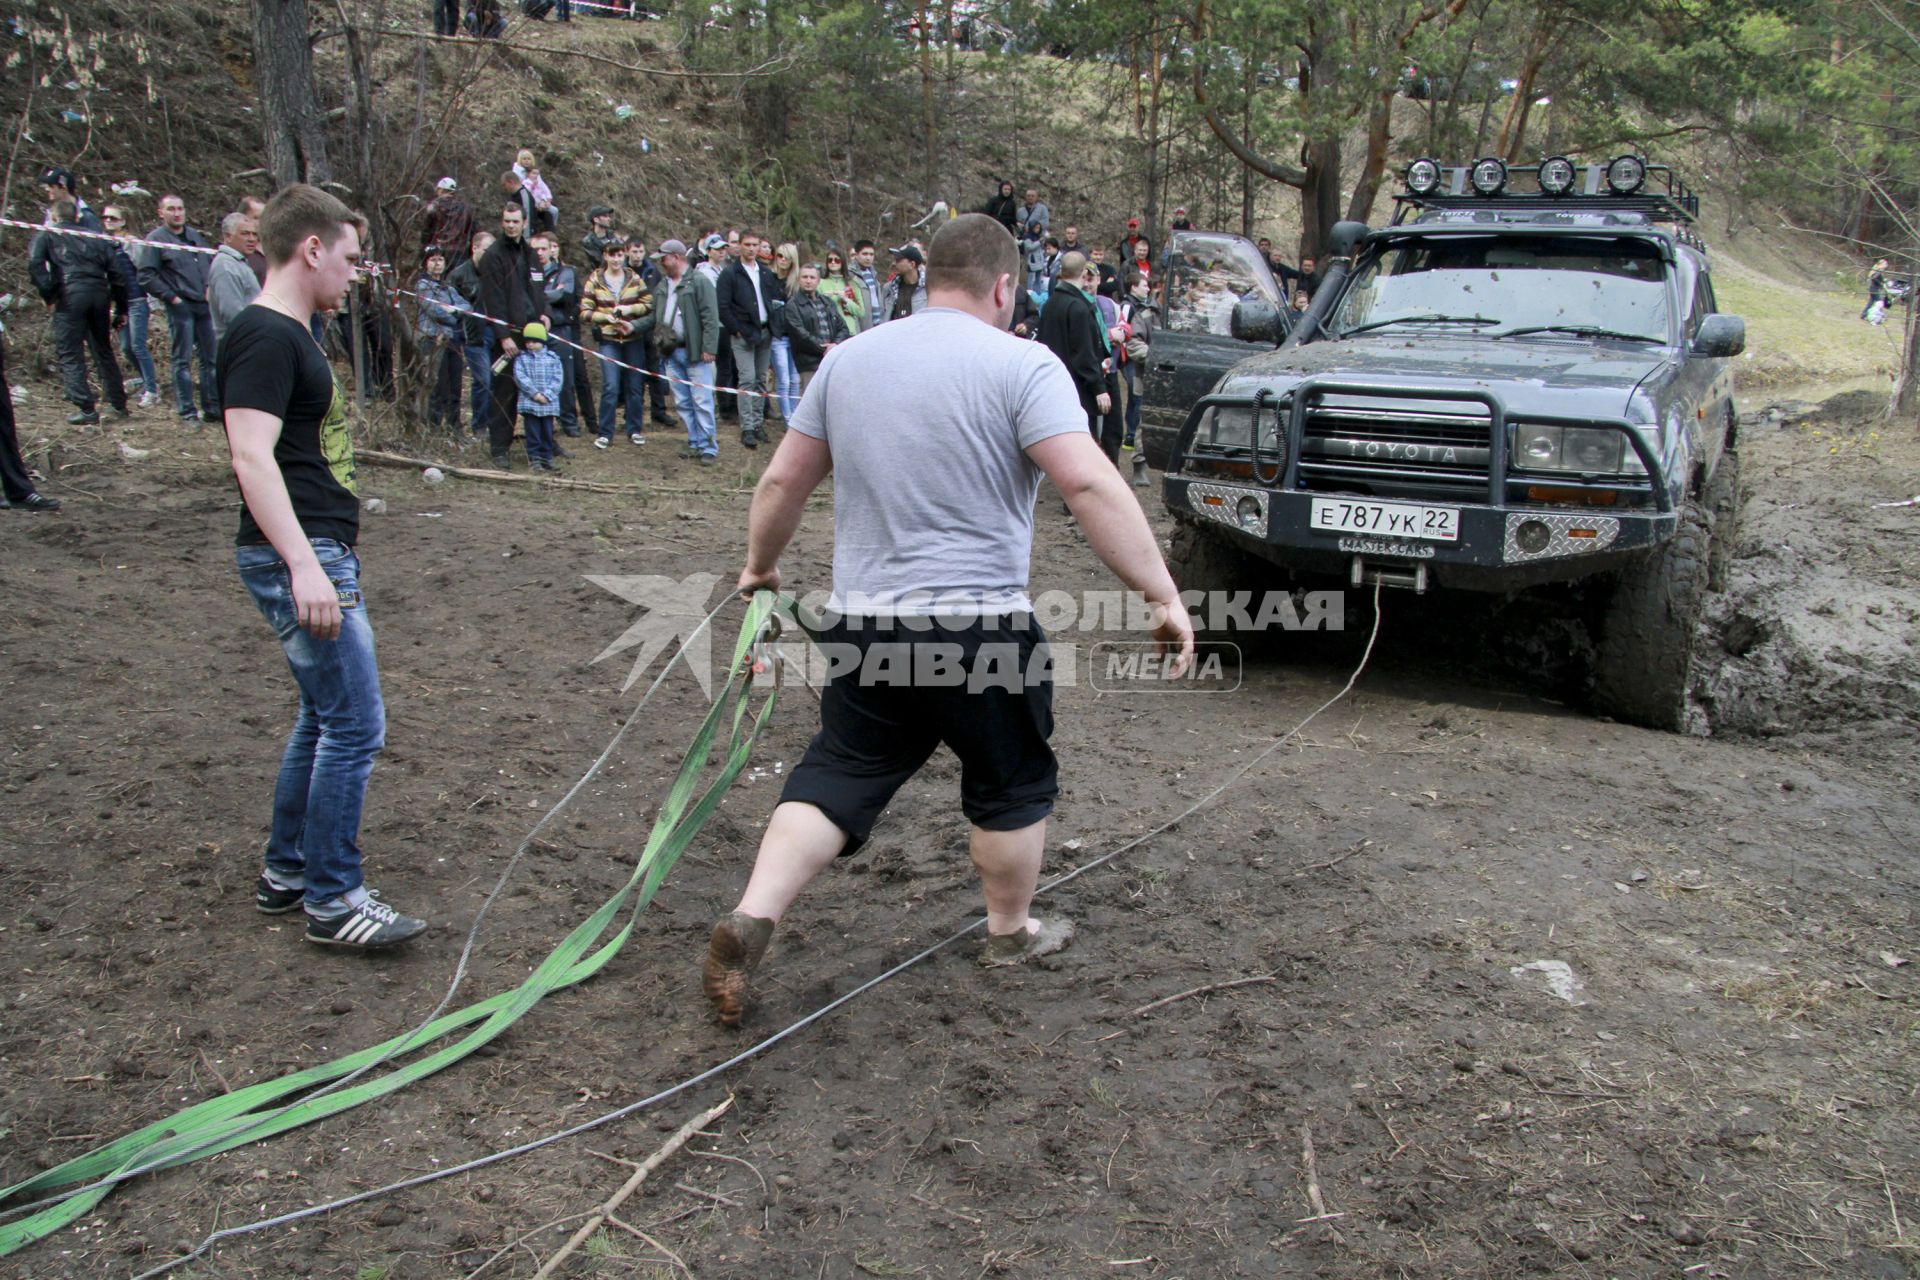 Джип-спринт `Апрельский кураж` в Барнауле. На снимке: мужчины готовятся вытаскивать автомобиль из грязи.